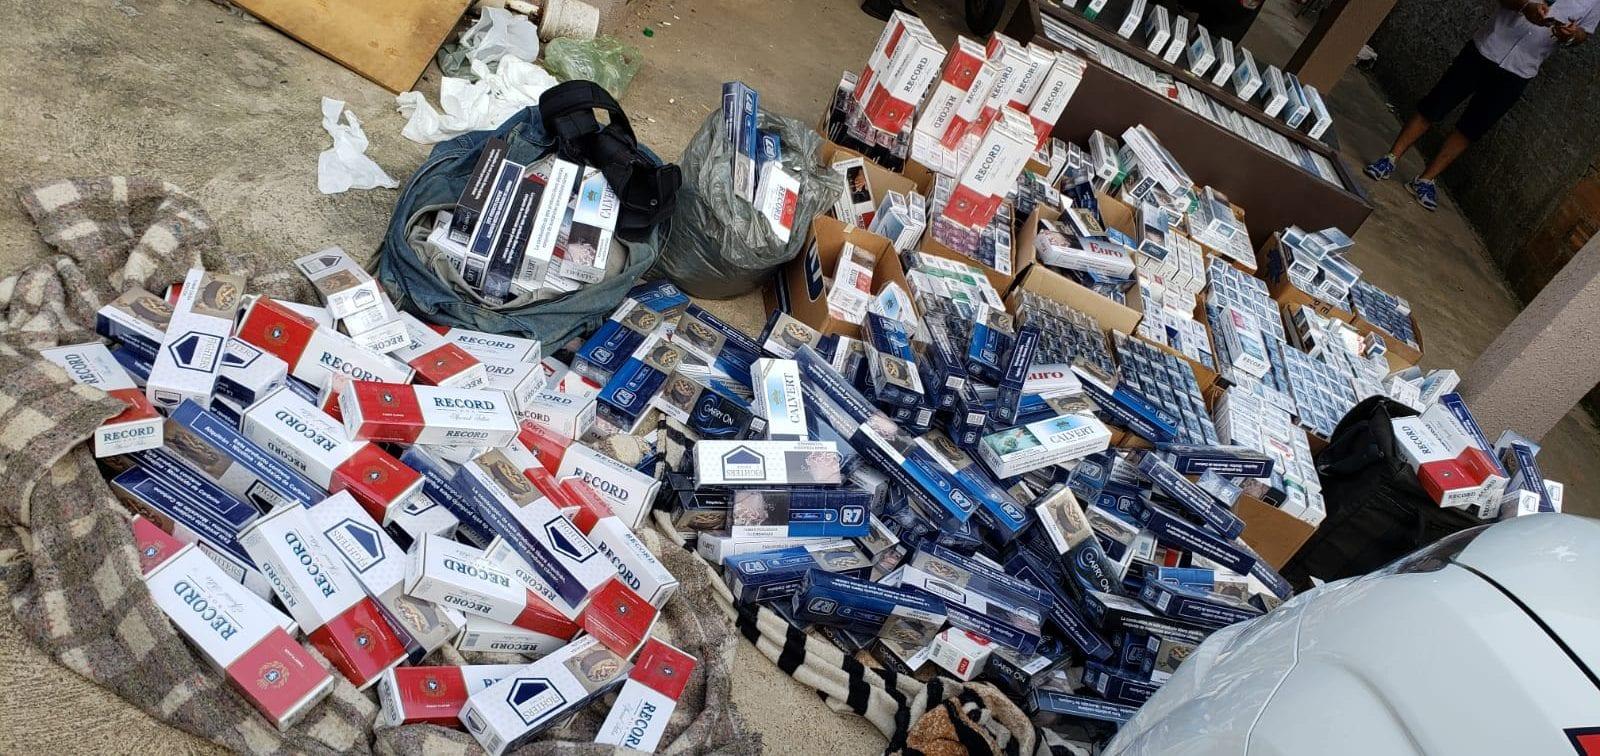 PM apreende carga de cigarros contrabandeados em Aparecida de Goiânia